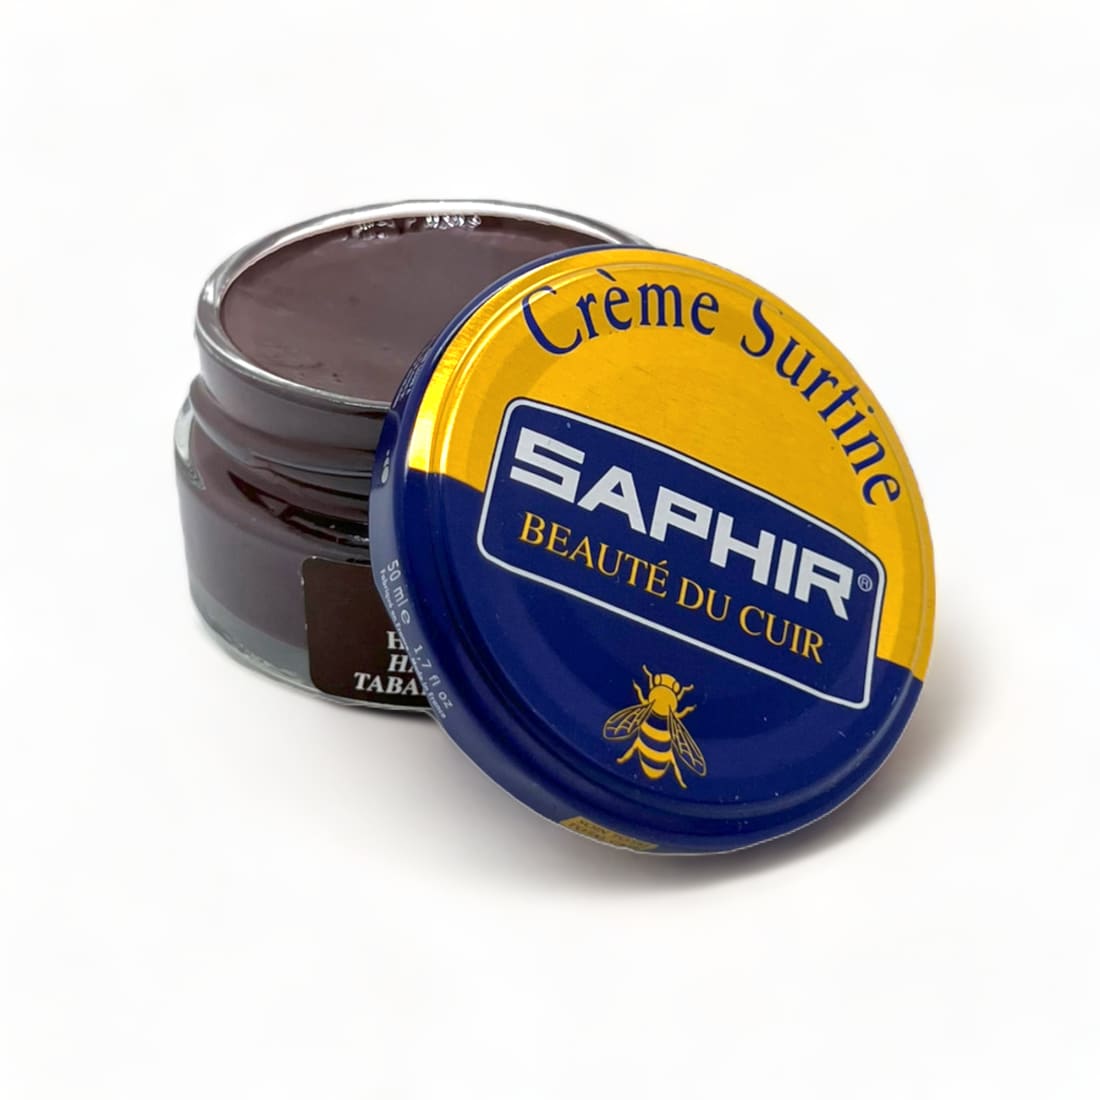 Cirage Crème Surfine Havane - Saphir - 50 ml - Accessoires